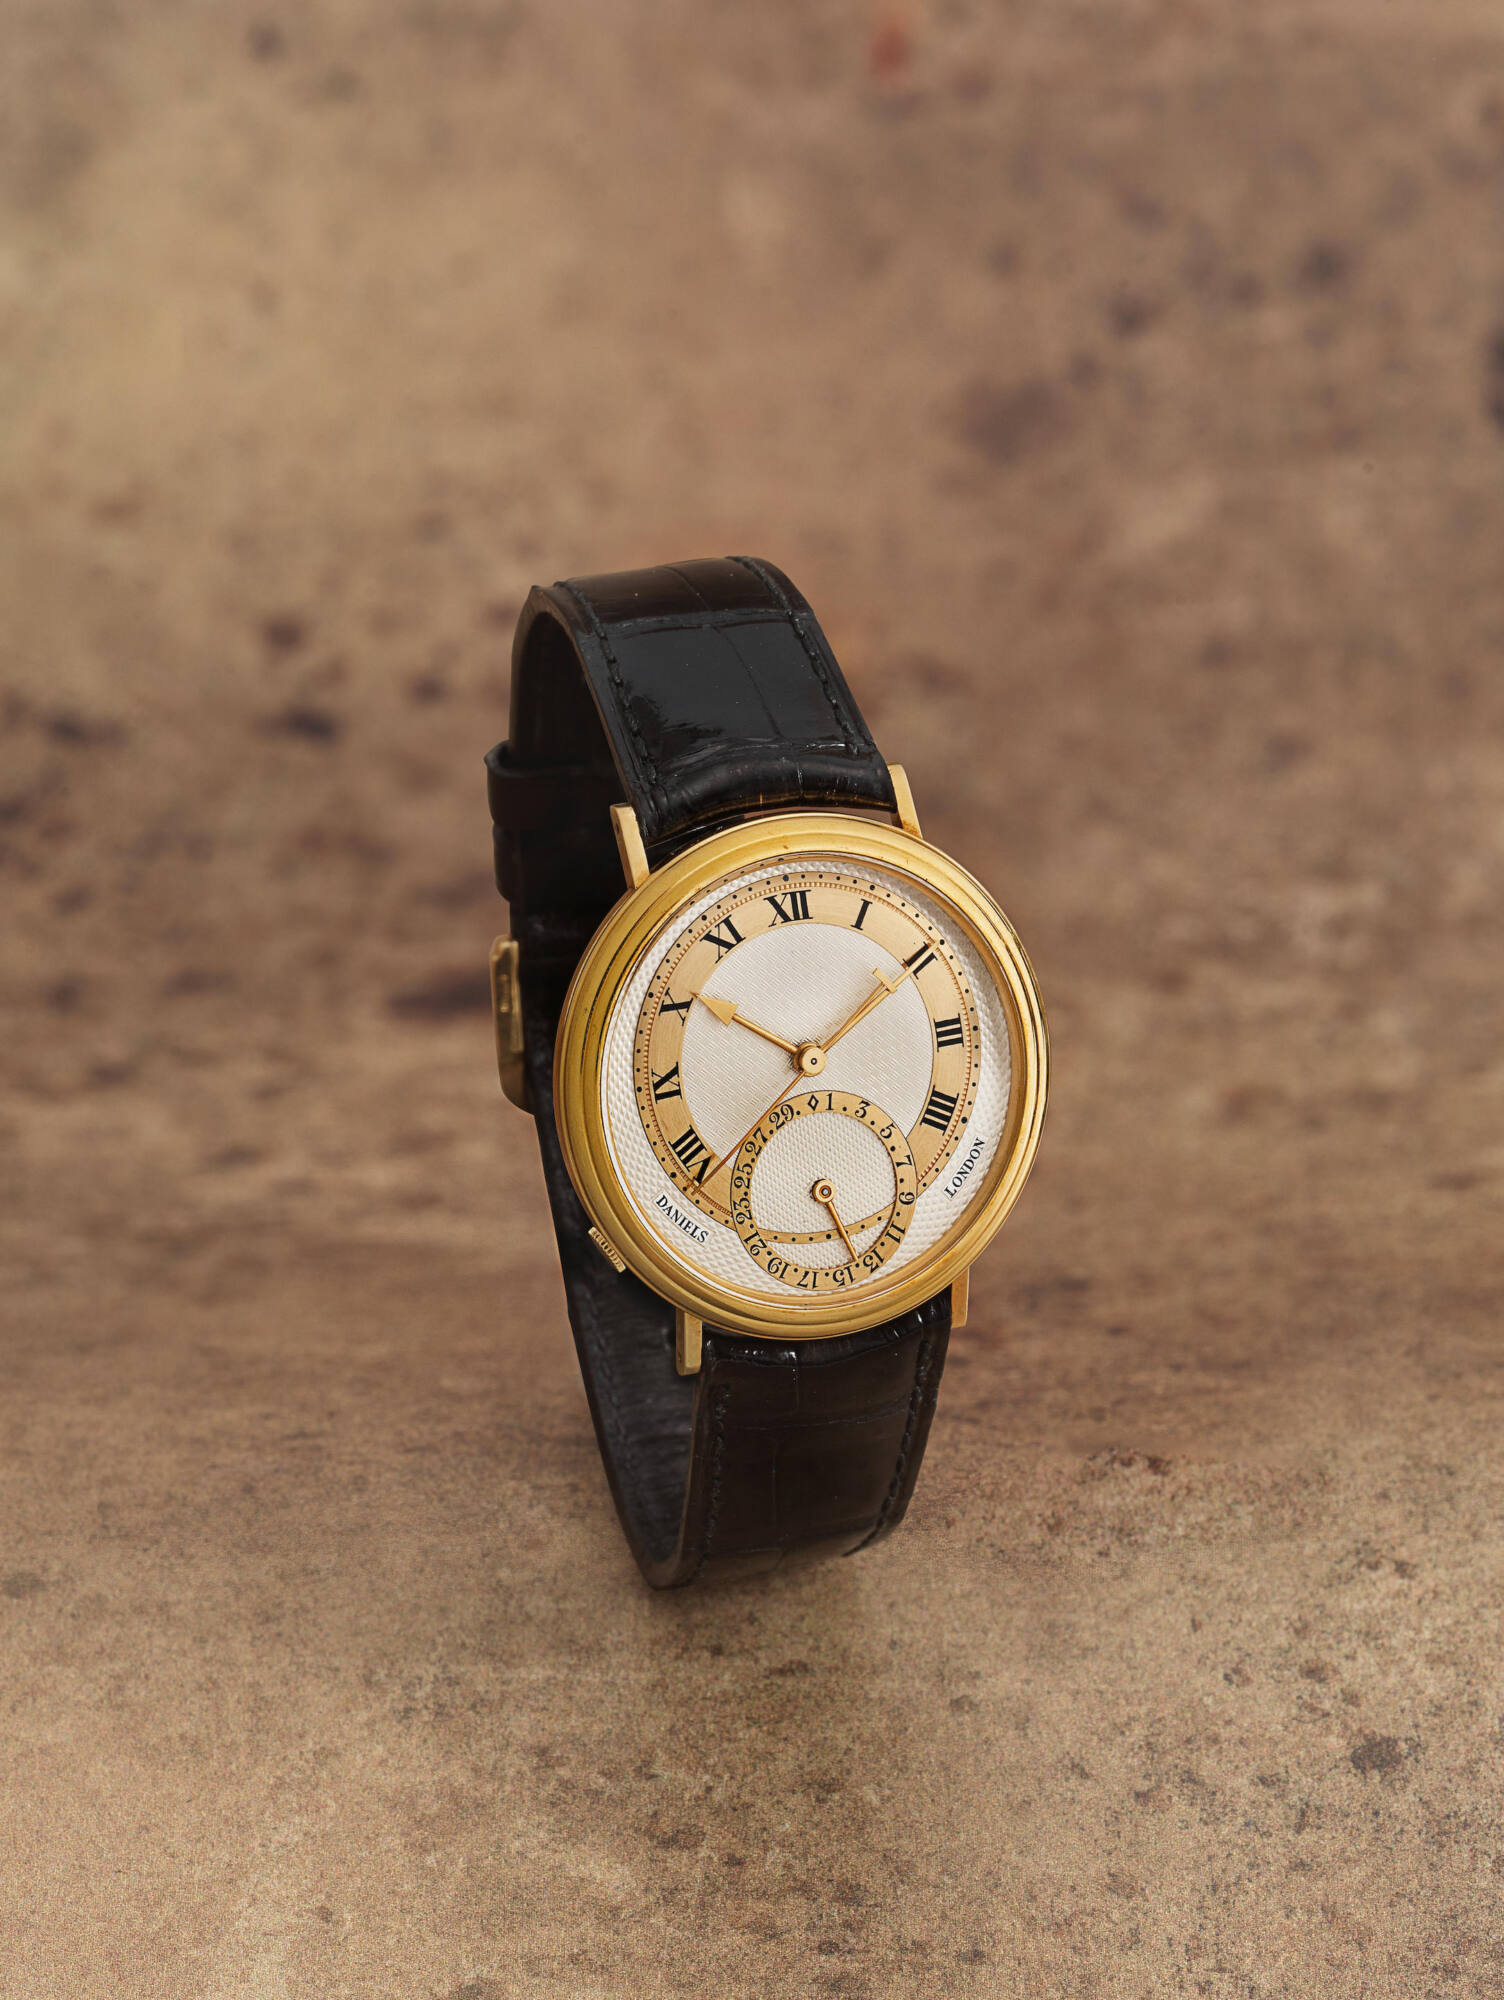 Fine Watches Live Auction by Bonhams - MondaniWeb